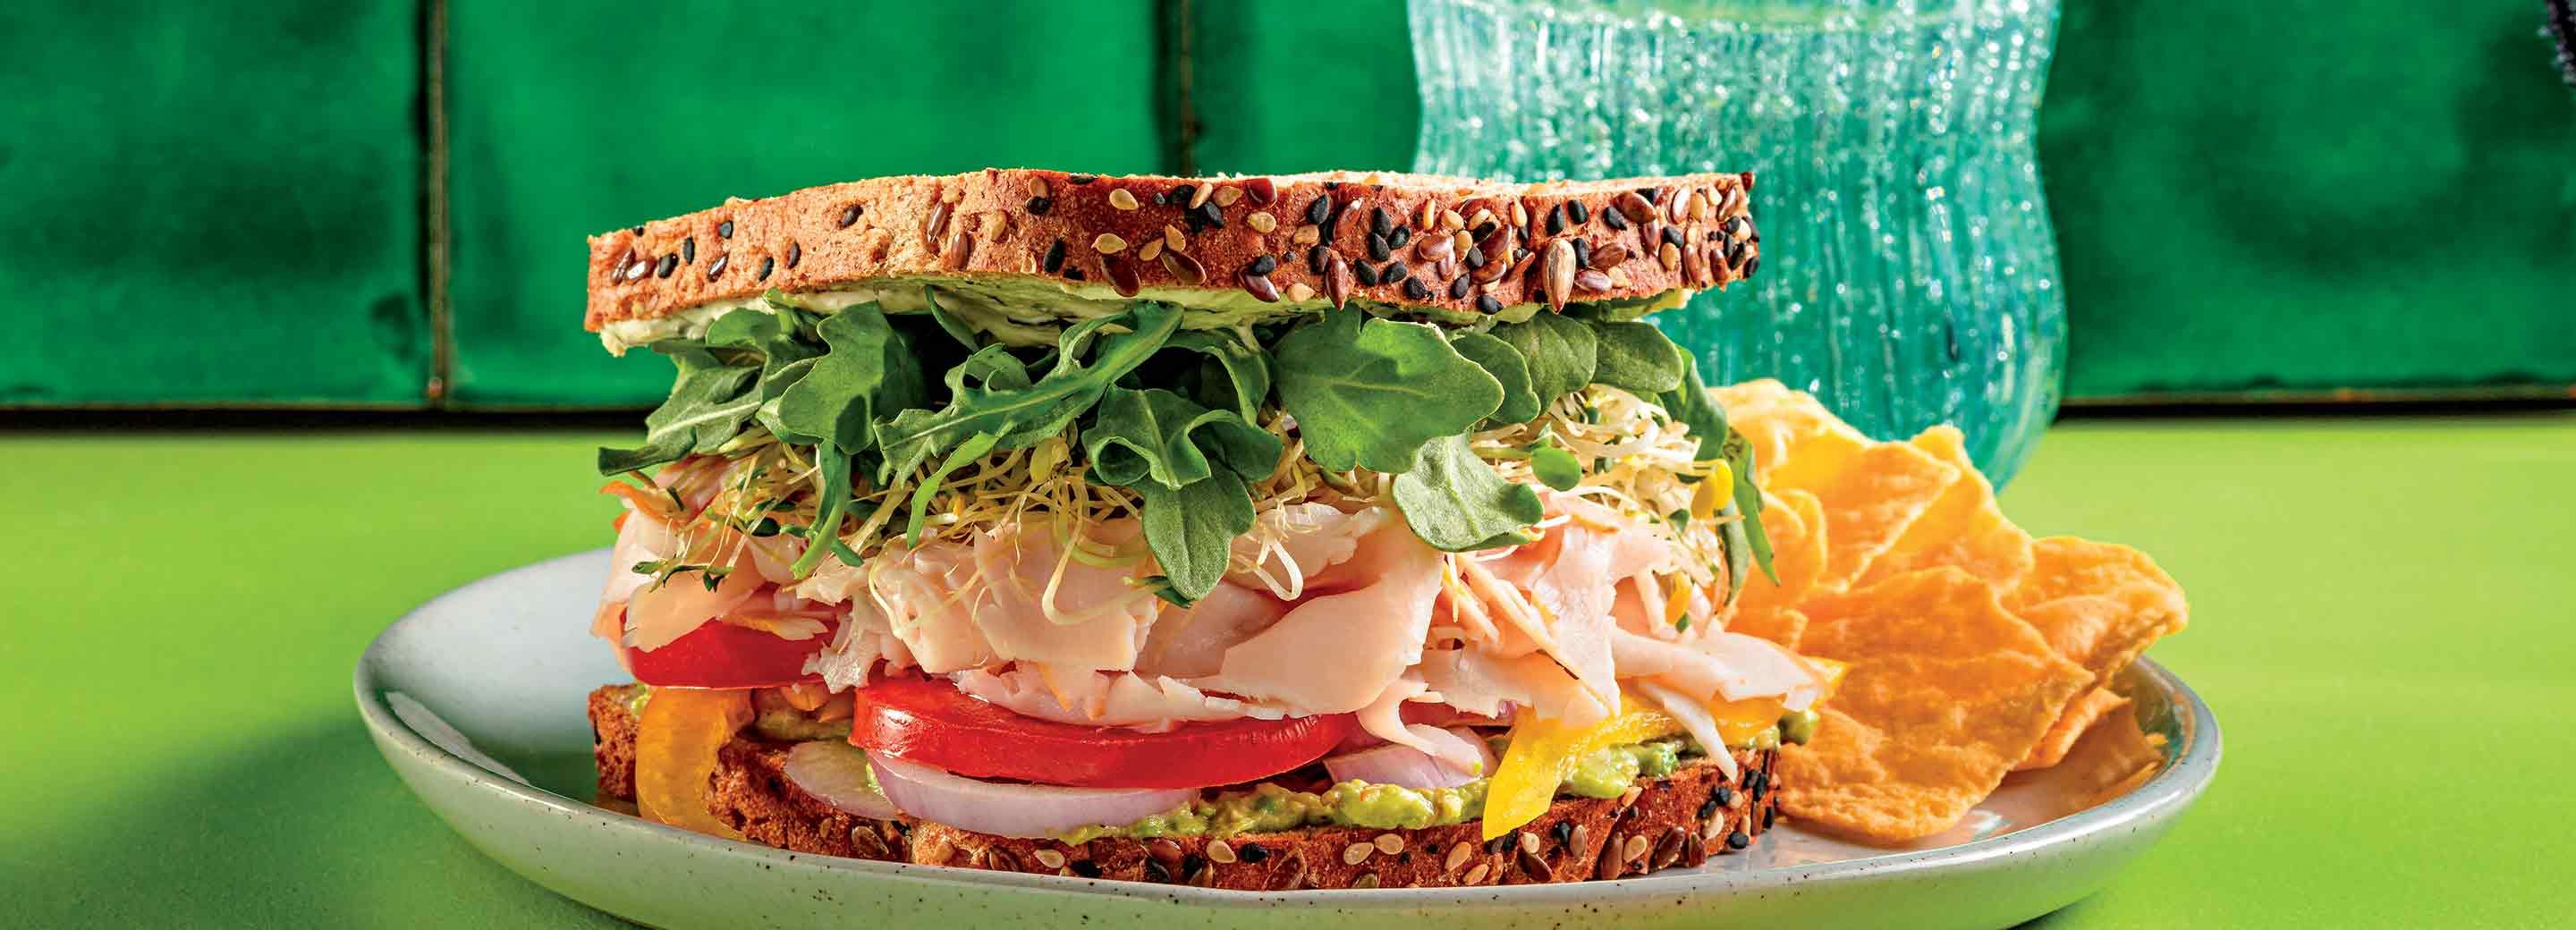 Turkey and Veggie Sandwich